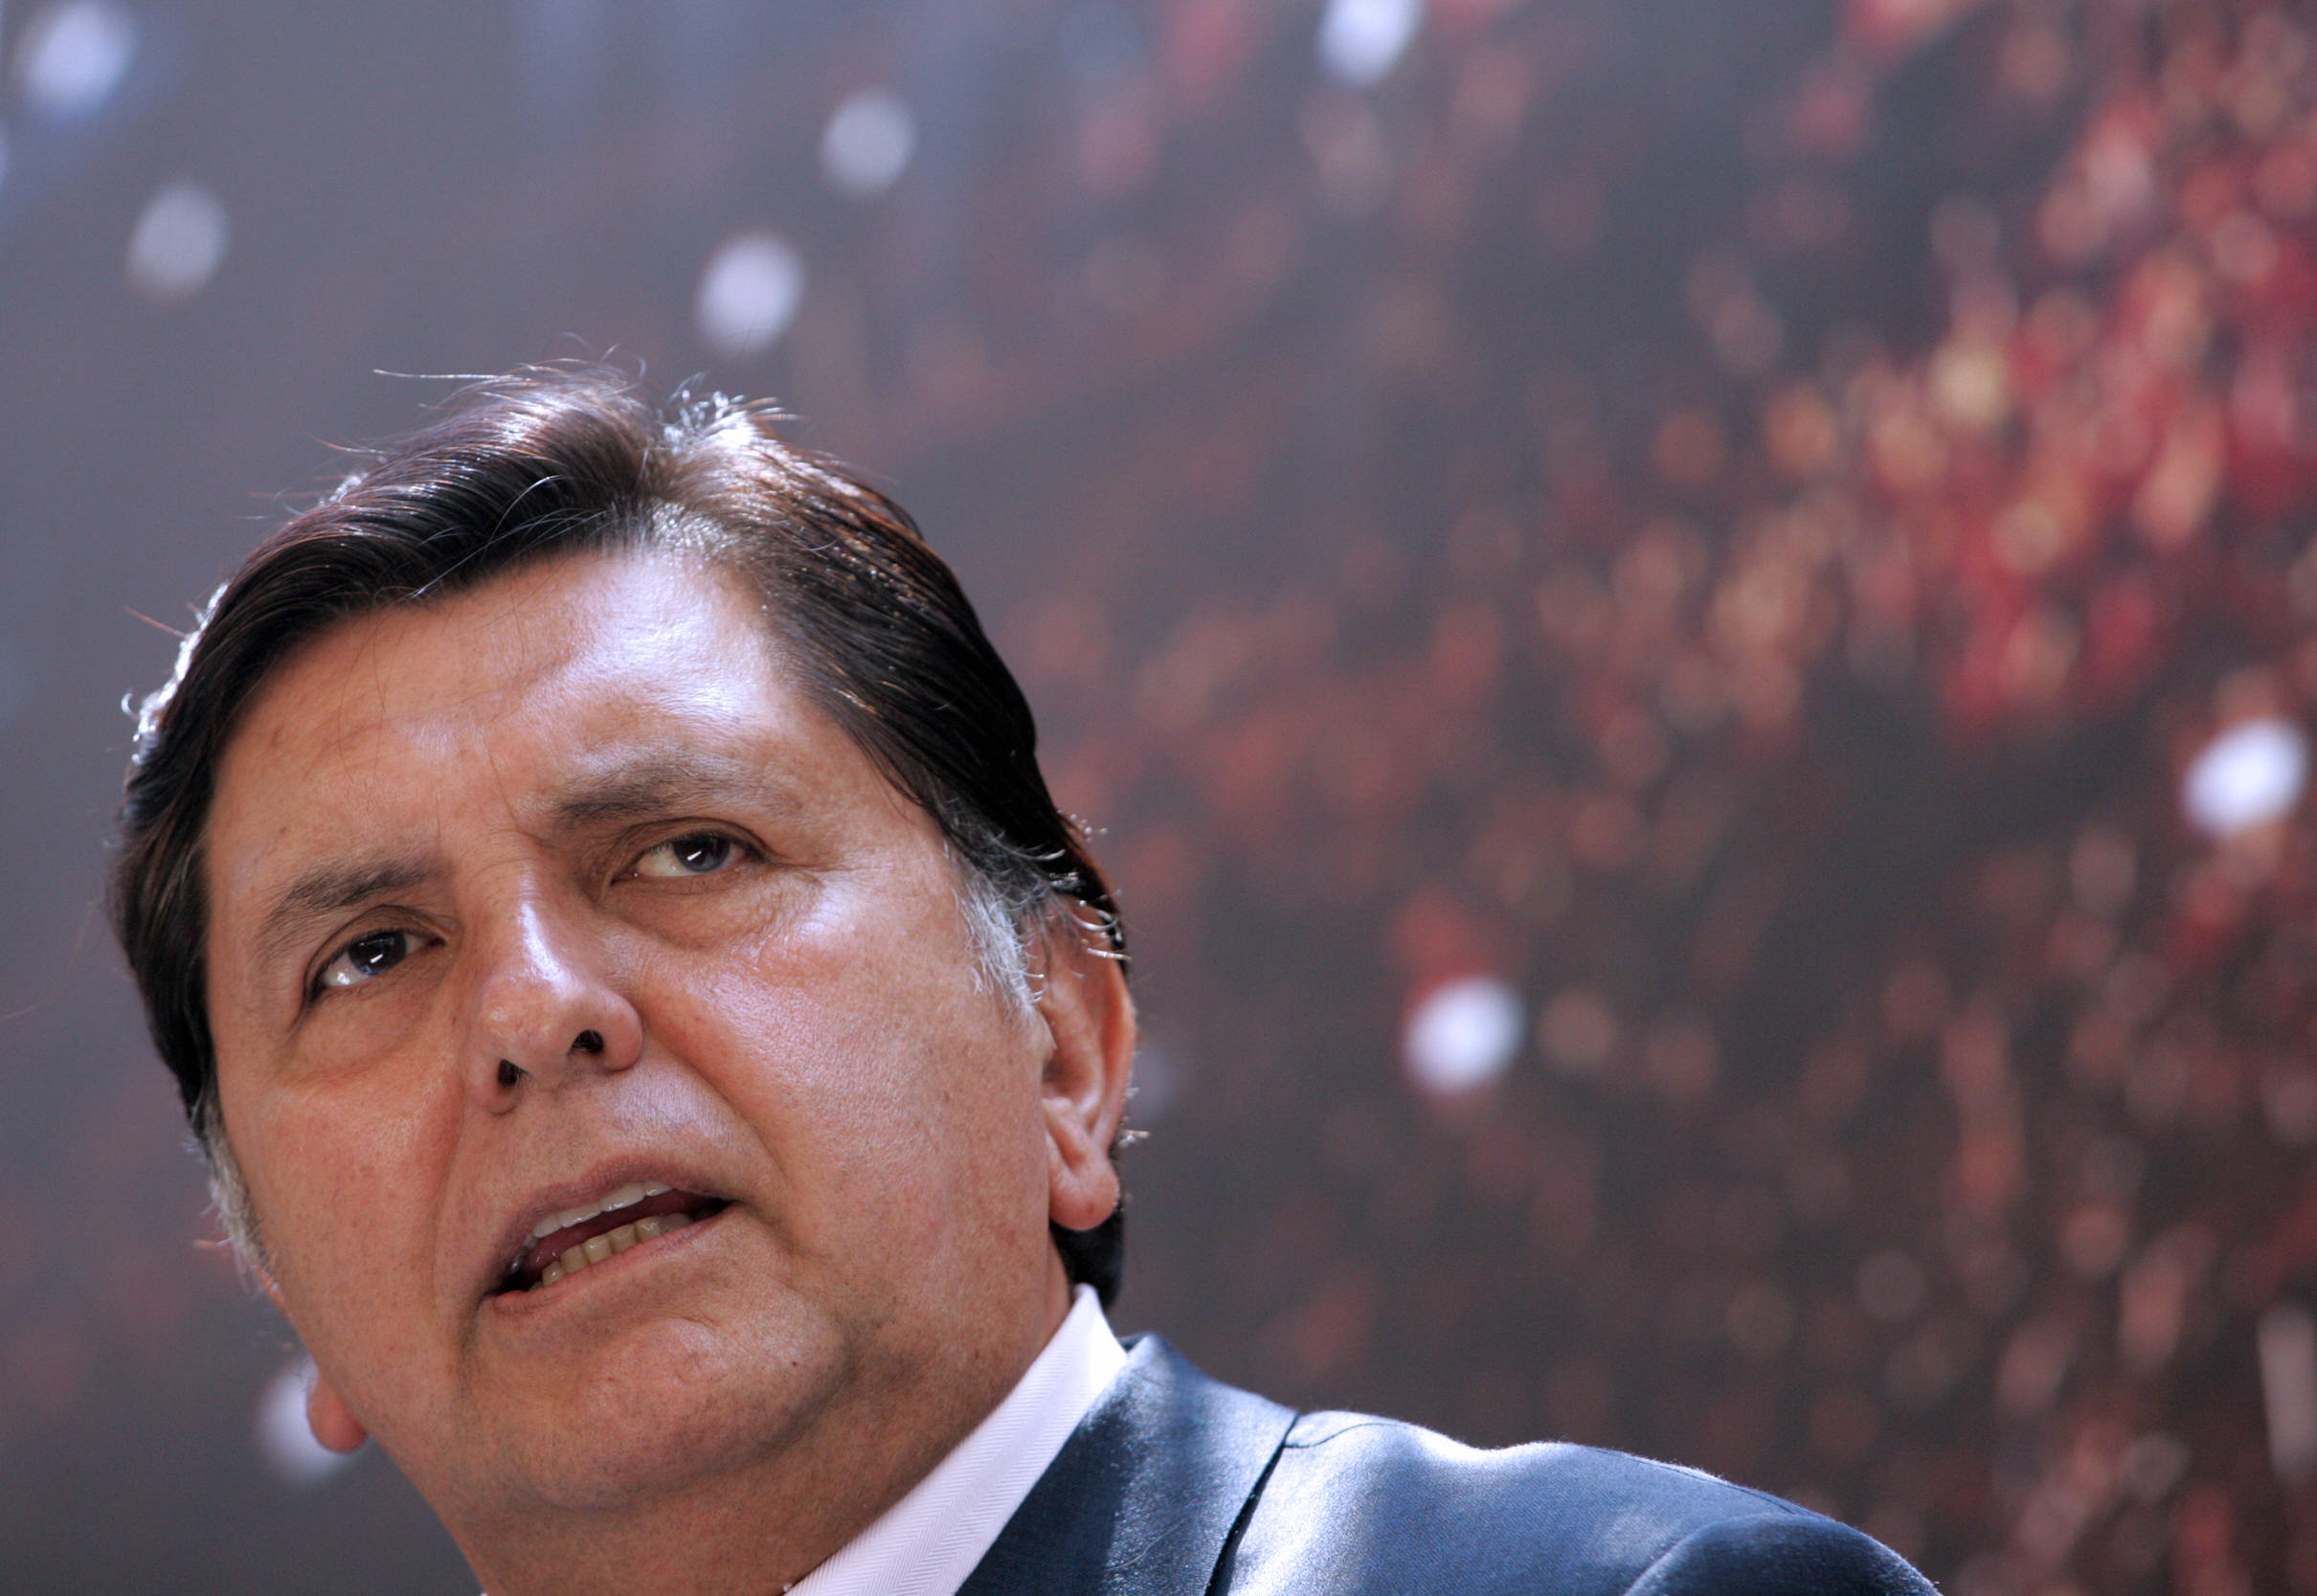 El expresidente peruano Alan García murió en un hospital de Lima, Perú. (Foto Prensa Libre: AFP)